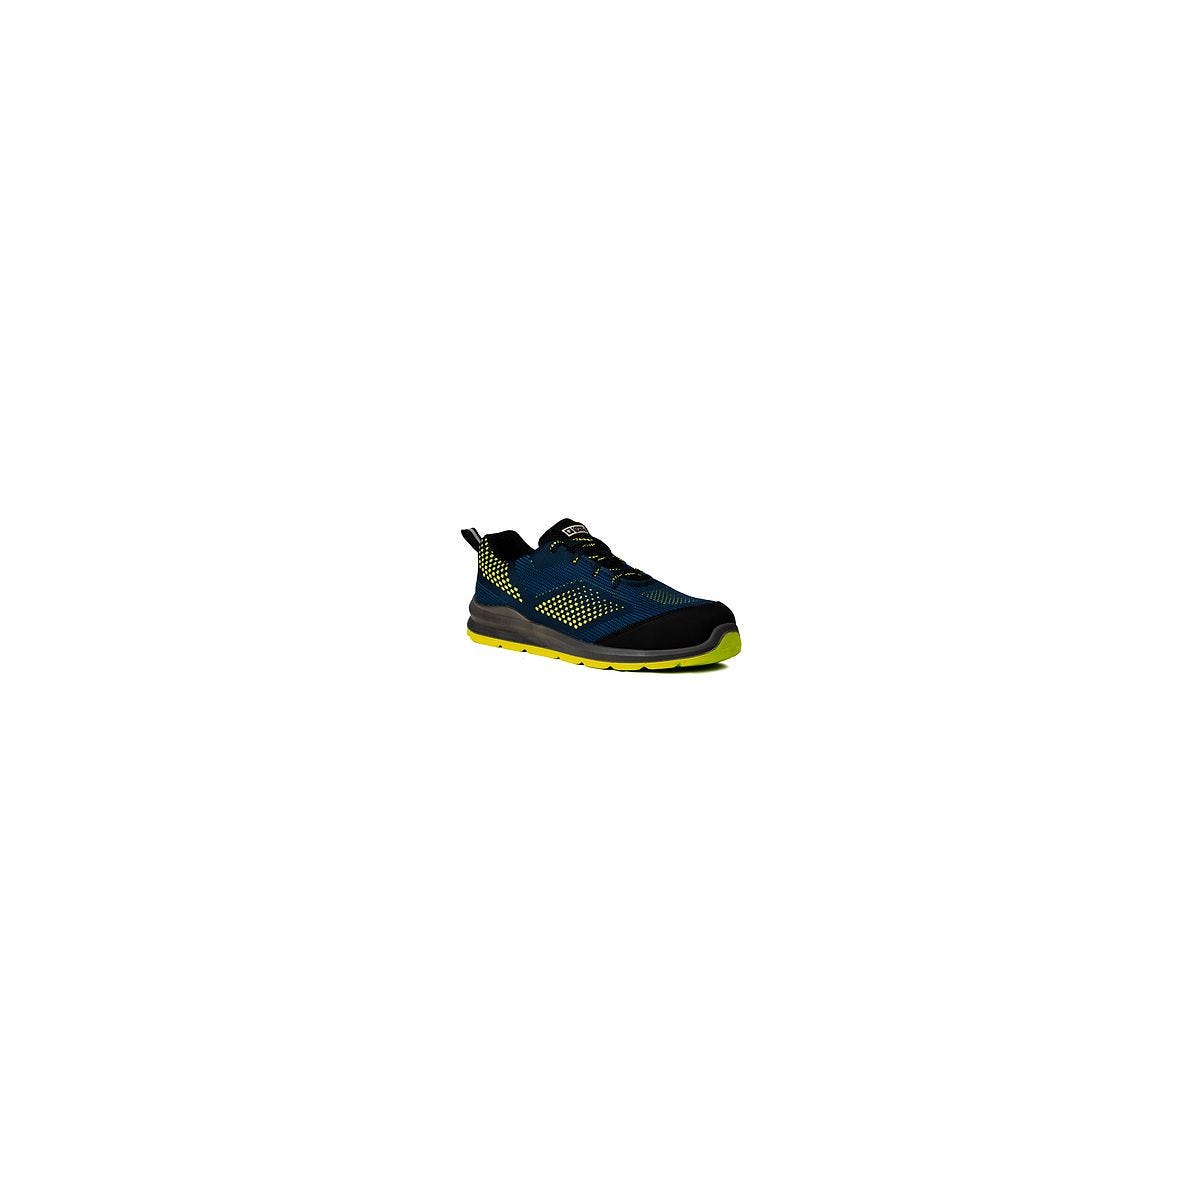 Chaussures de sécurité MILERITE S1P Basse Bleu/Vert/Jaune - COVERGUARD - Taille 44 0